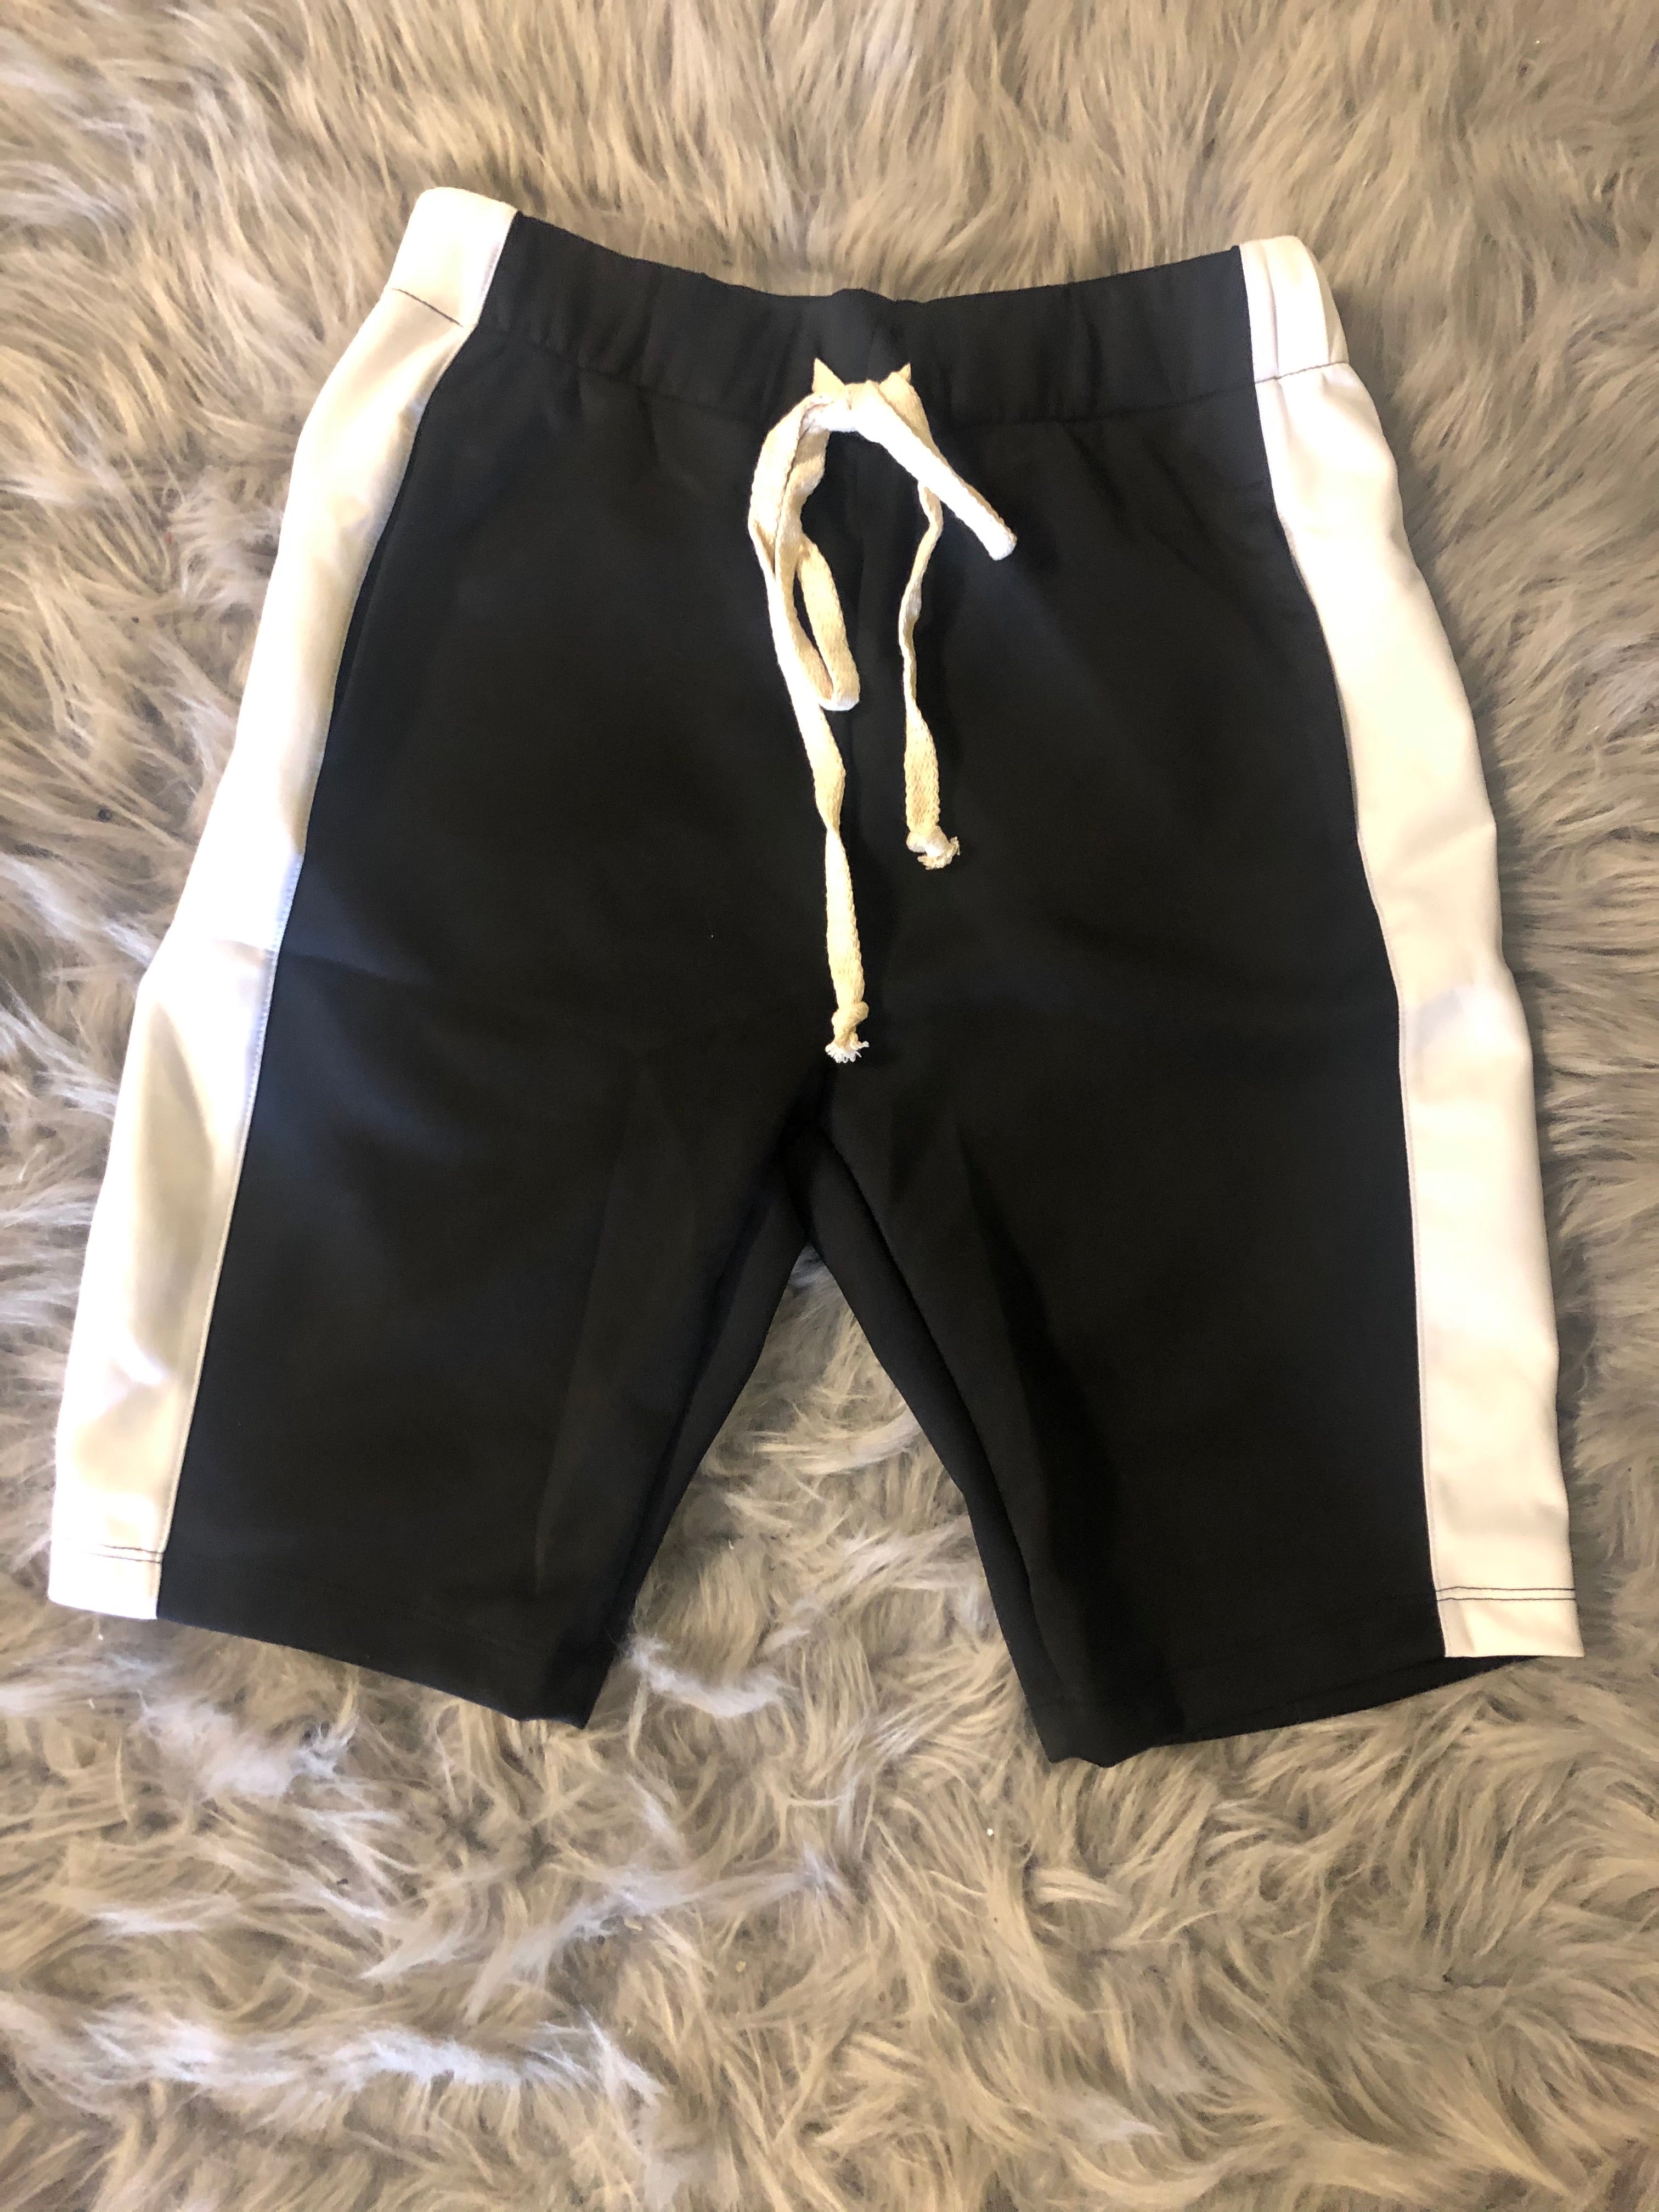 Black/White Jogger Shorts